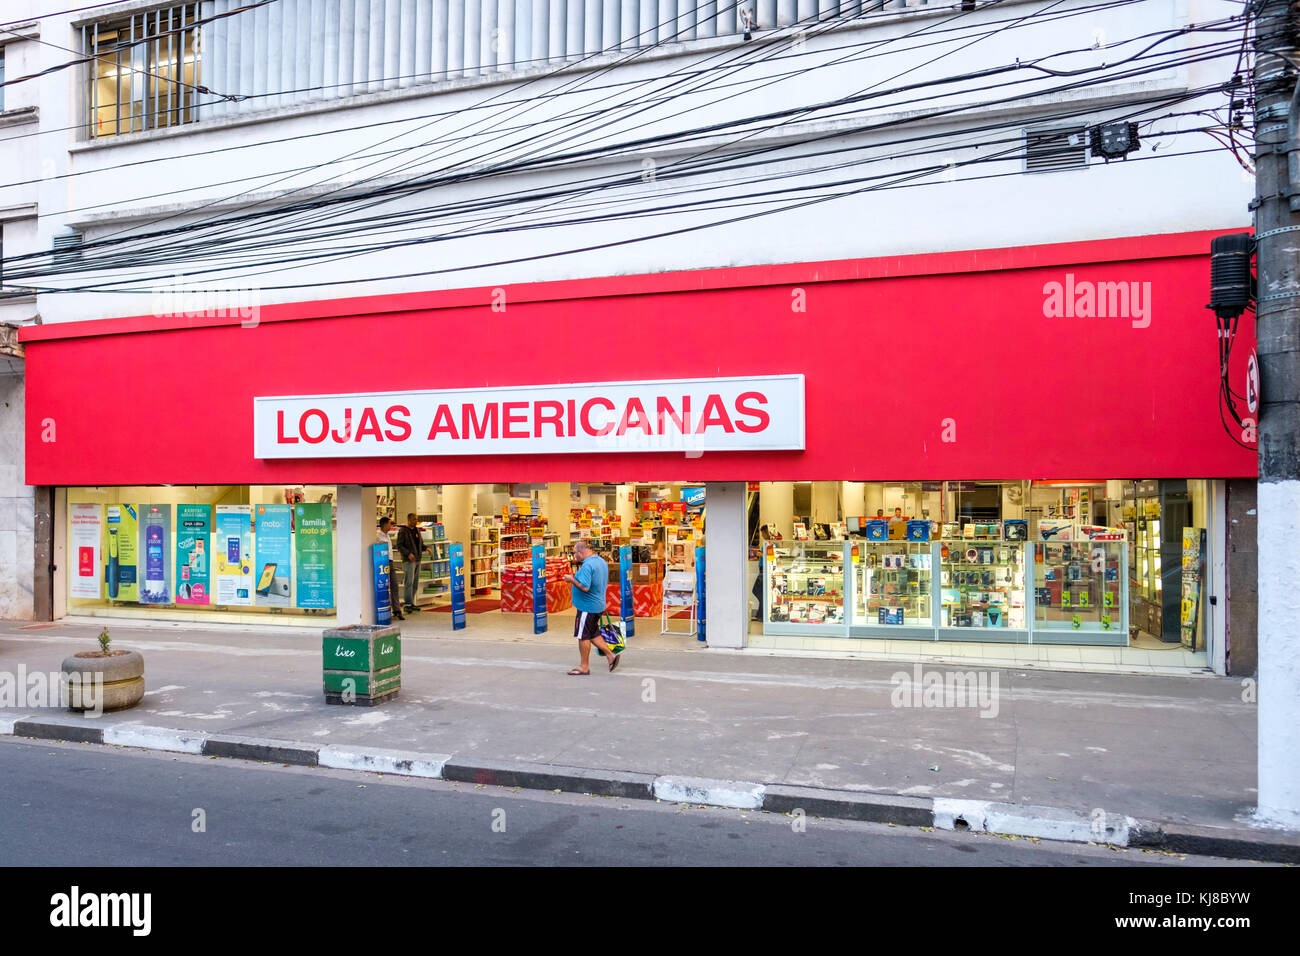 Lojas Americanas S.A., Blick von Außen, Fußgänger, der Verbraucher, der Brasilianischen Einzelhandelskette store Fassade mit Markennamen, Beschilderung, Santos, Sao Paulo, Brasilien. Stockfoto